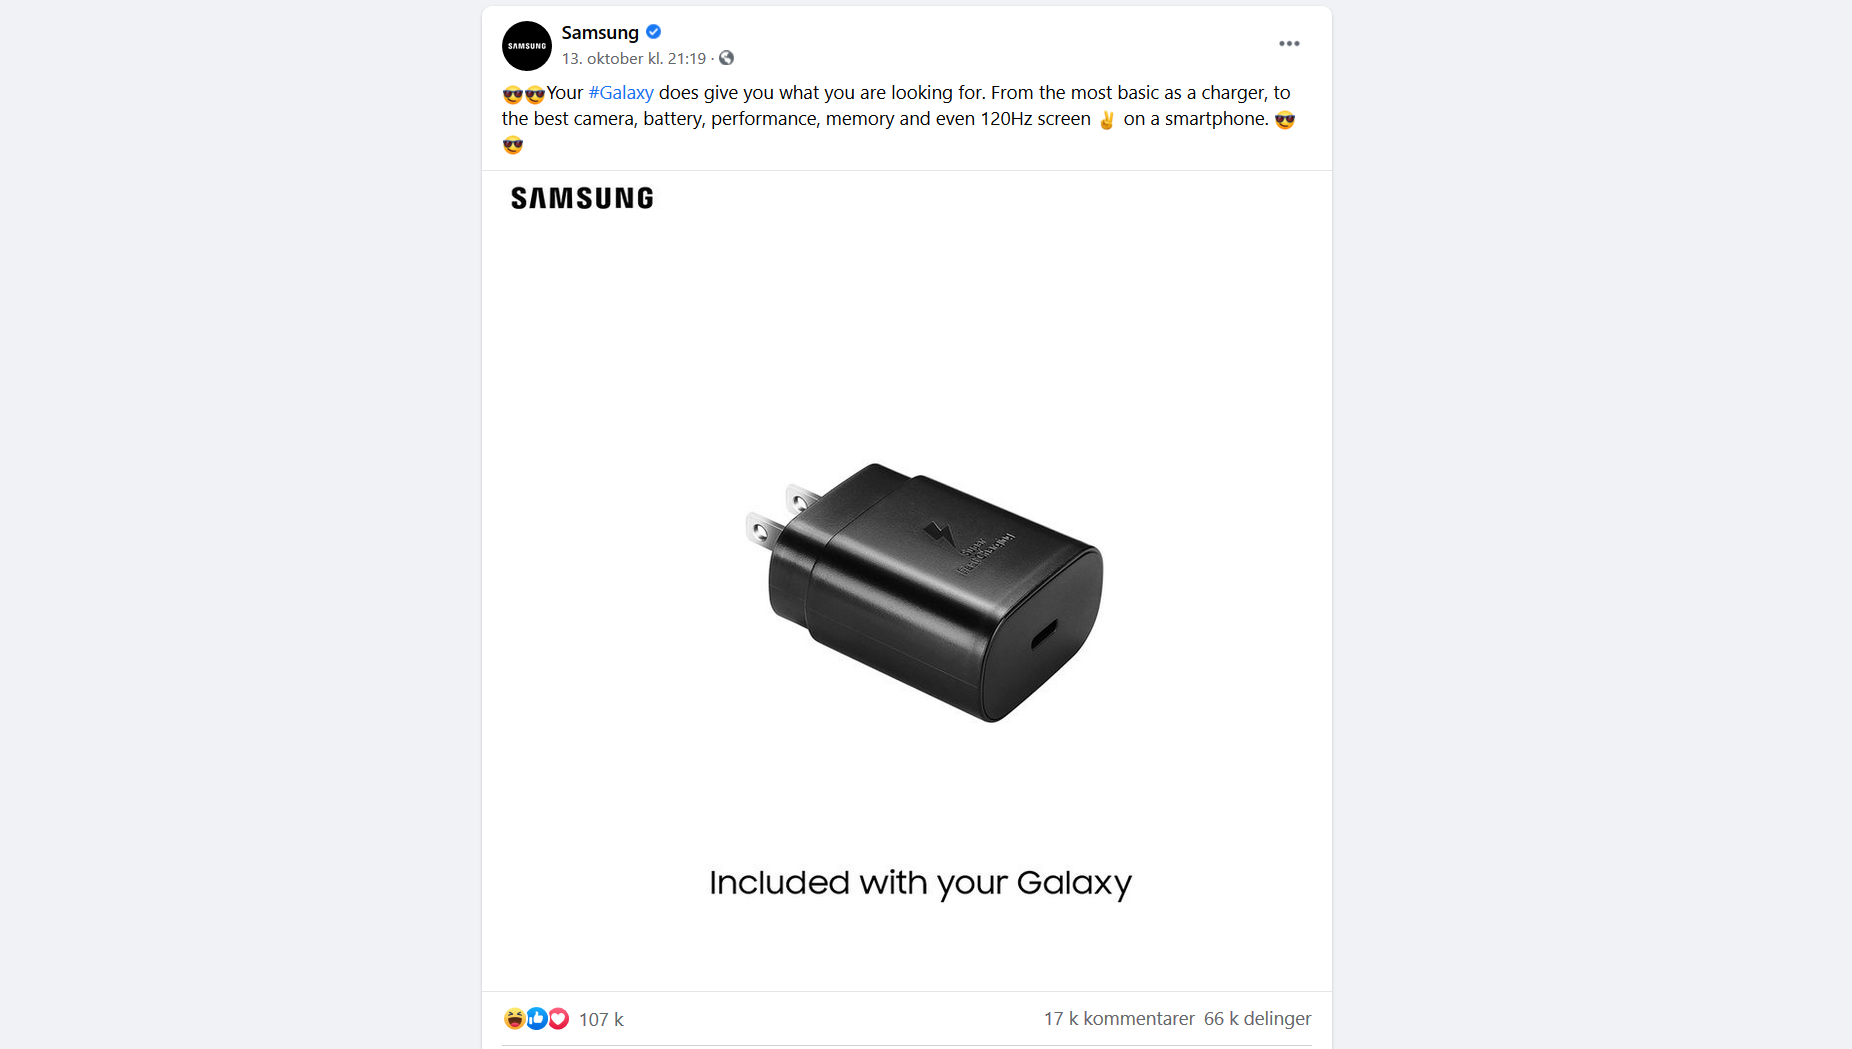 Jepp! Med Samsung får du lader inkludert. I hvert fall foreløpig.